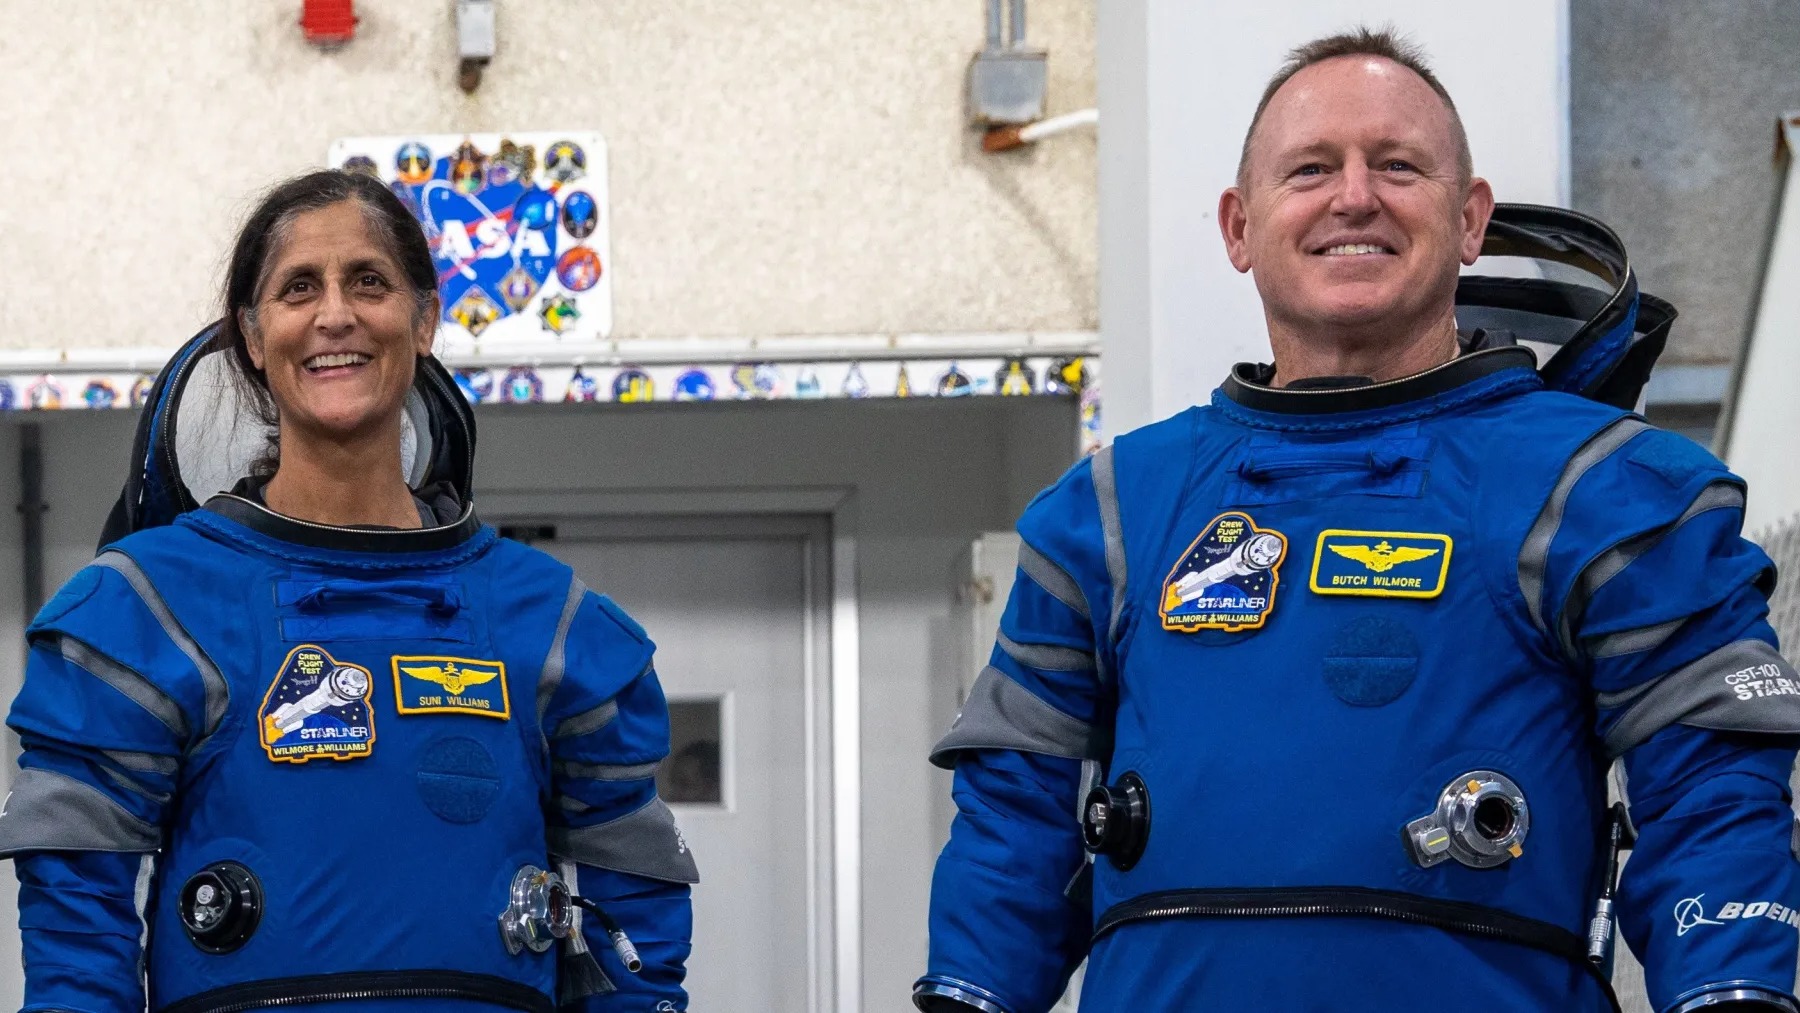 Οι νέοι αστροναύτες της NASA «ενθουσιασμένοι» που είδαν το πρώτο πλήρωμα Boeing Starliner να εκτοξεύεται τον Μάιο (Αποκλειστικό)